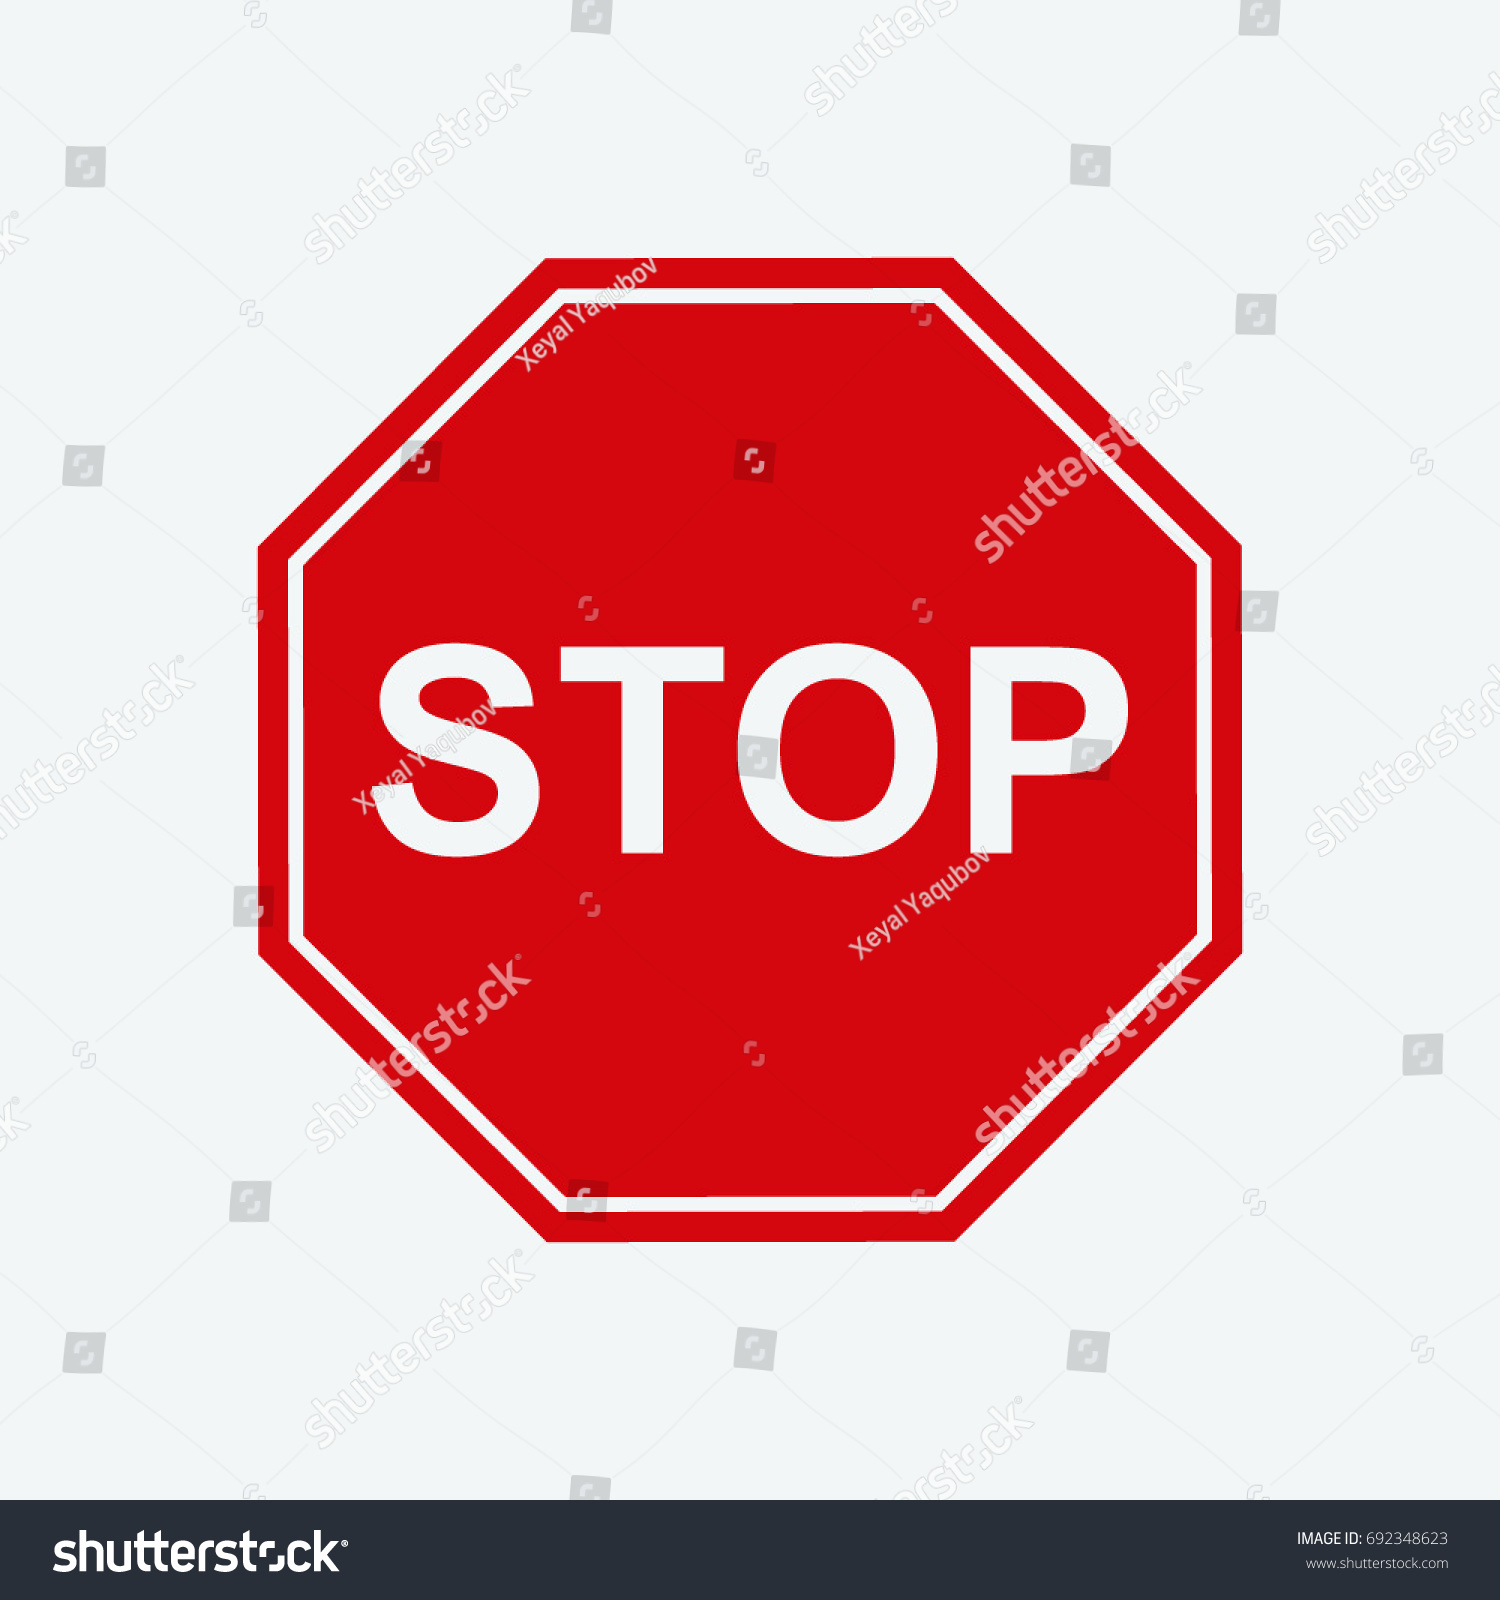 stop icon vector #692348623